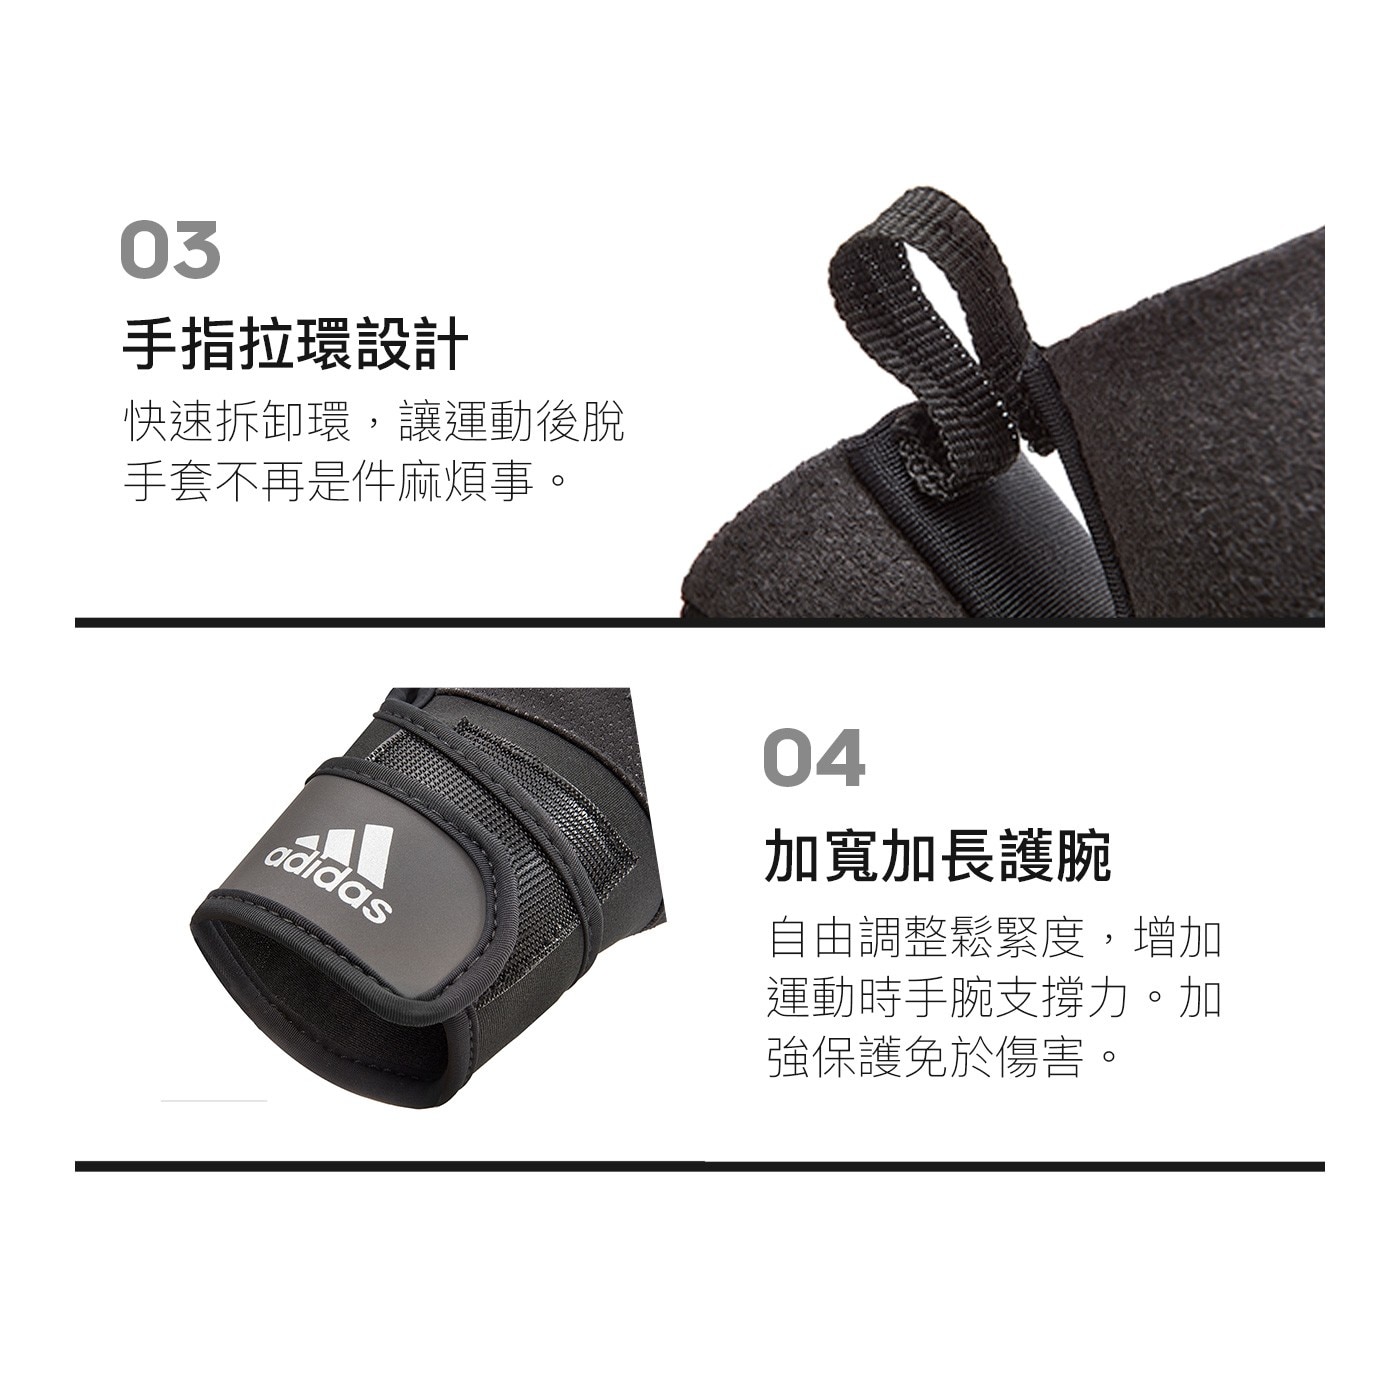 Adidas 進階加長防護手套三大功能自然抓握舒適止滑方便拆卸